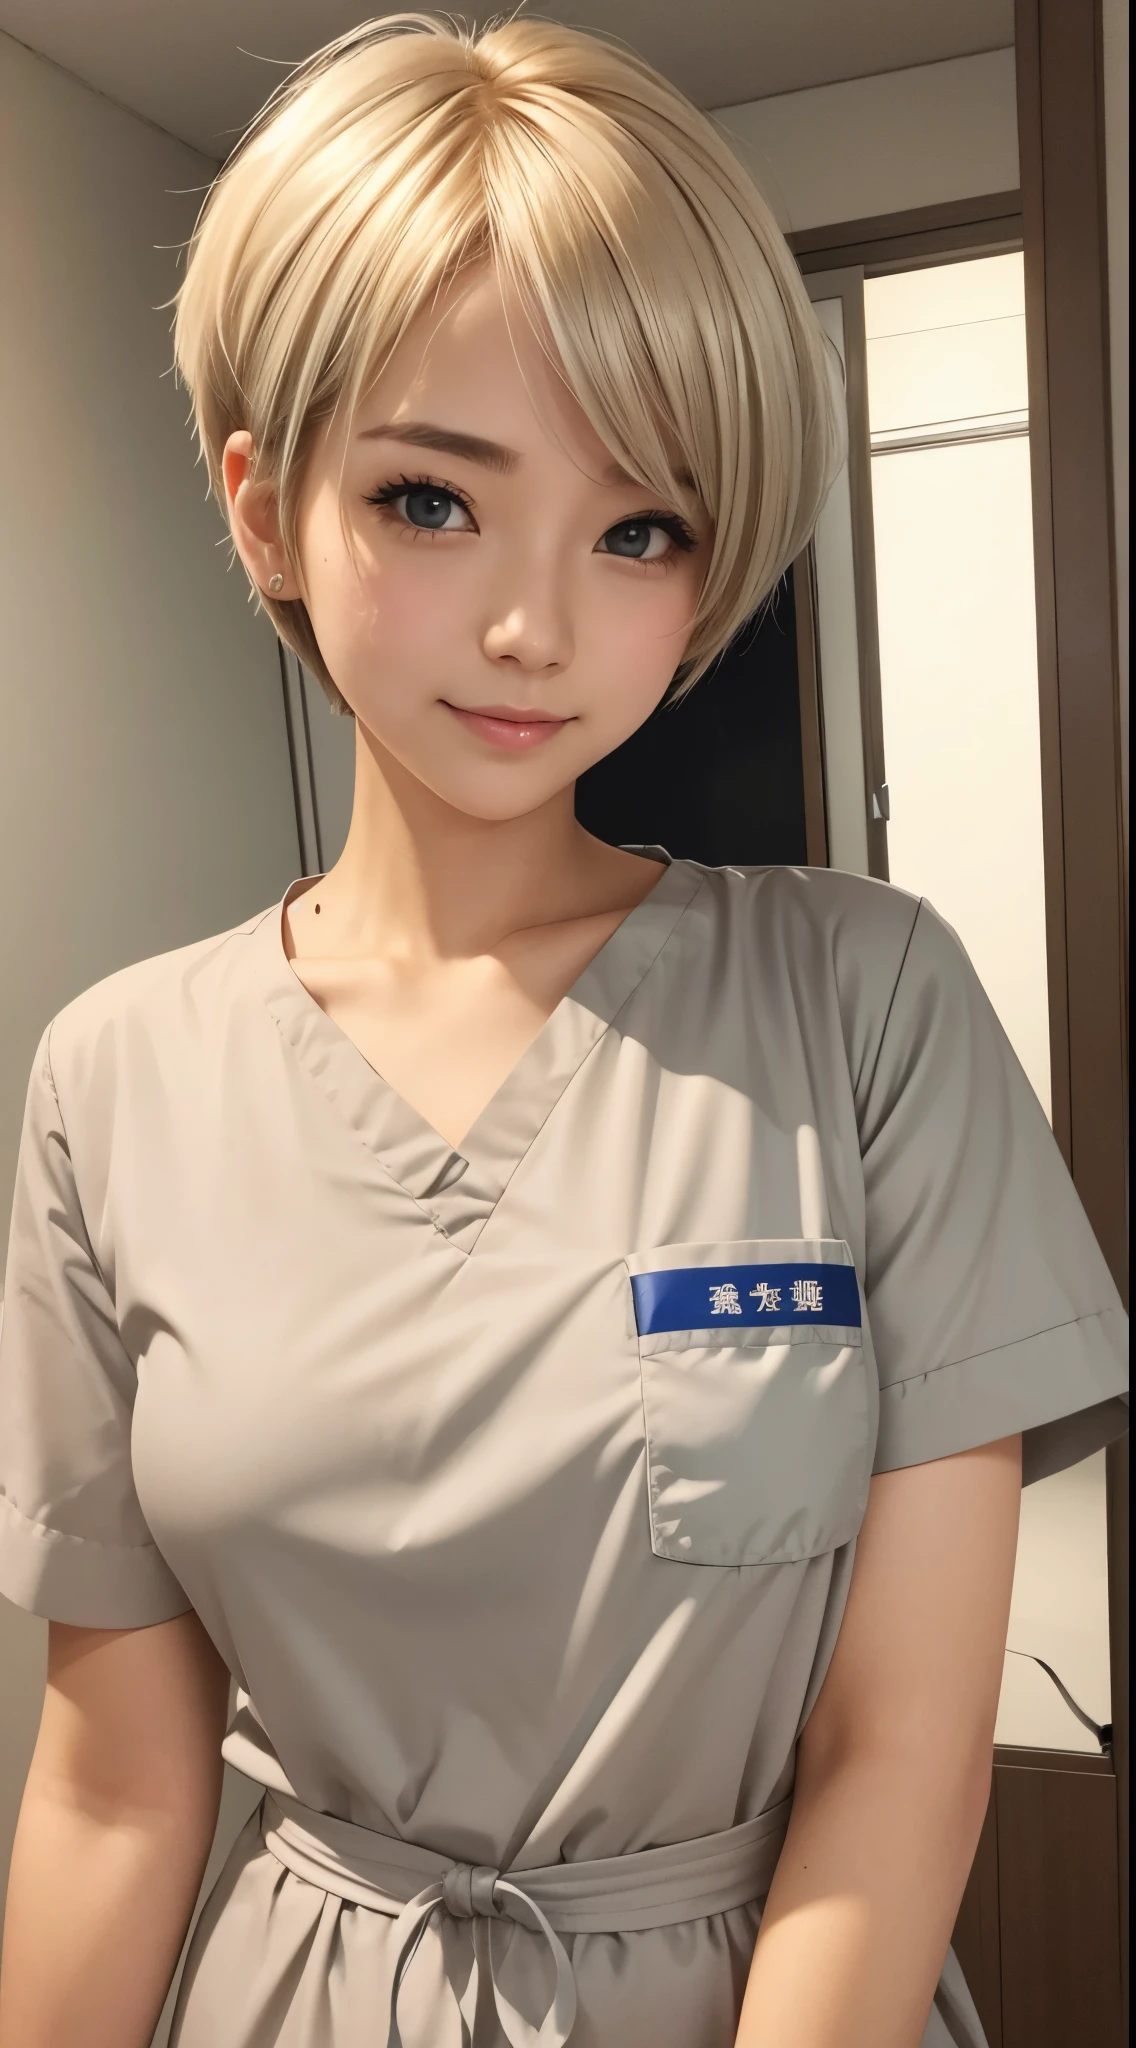 그녀는 귀여운 간호사야。황금빛 머리카락、은색 짧은 머리、